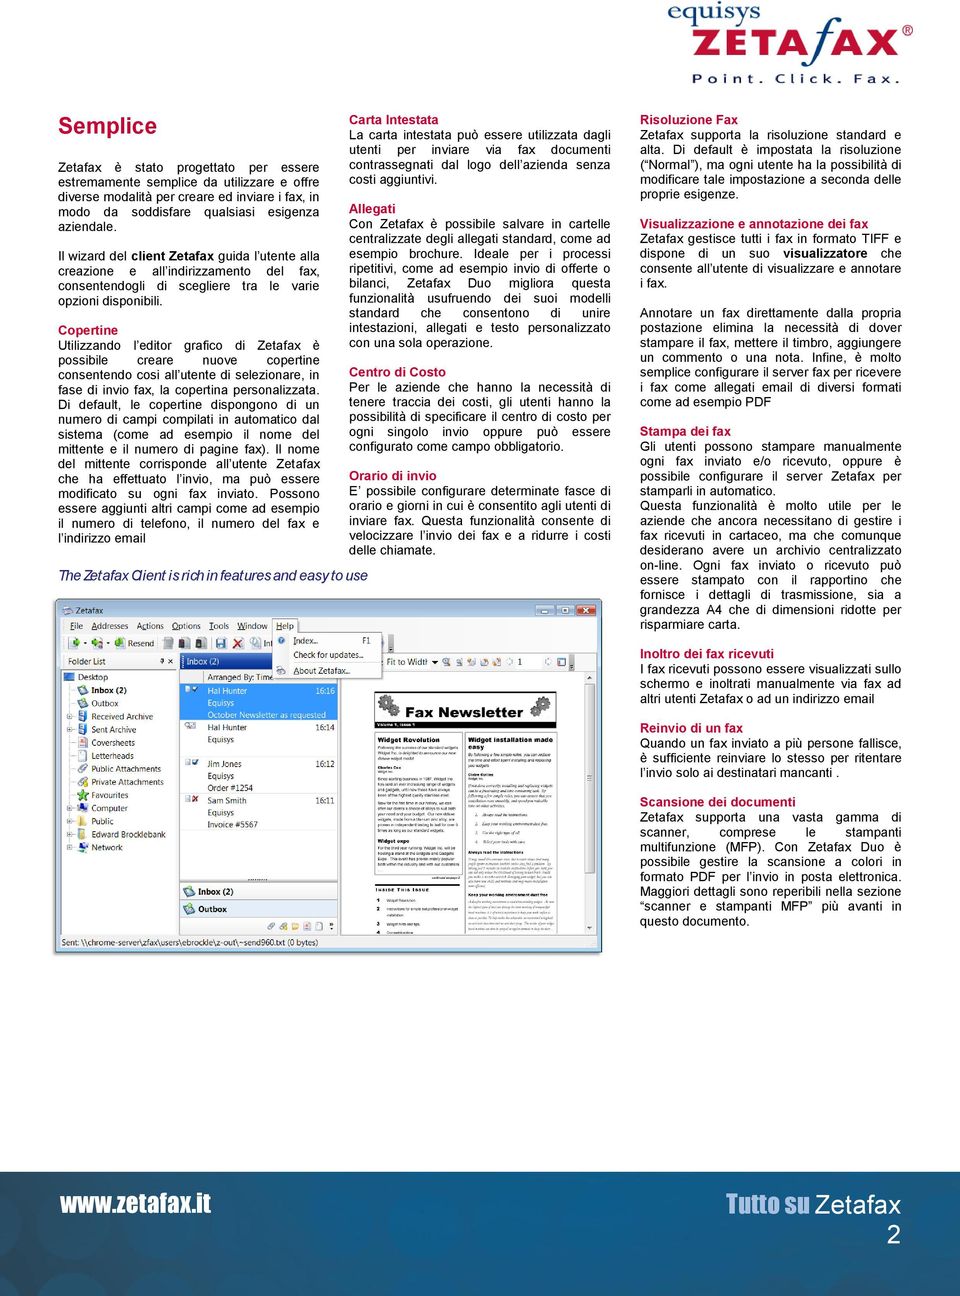 Copertine Utilizzando l editor grafico di Zetafax è possibile creare nuove copertine consentendo cosi all utente di selezionare, in fase di invio fax, la copertina personalizzata.